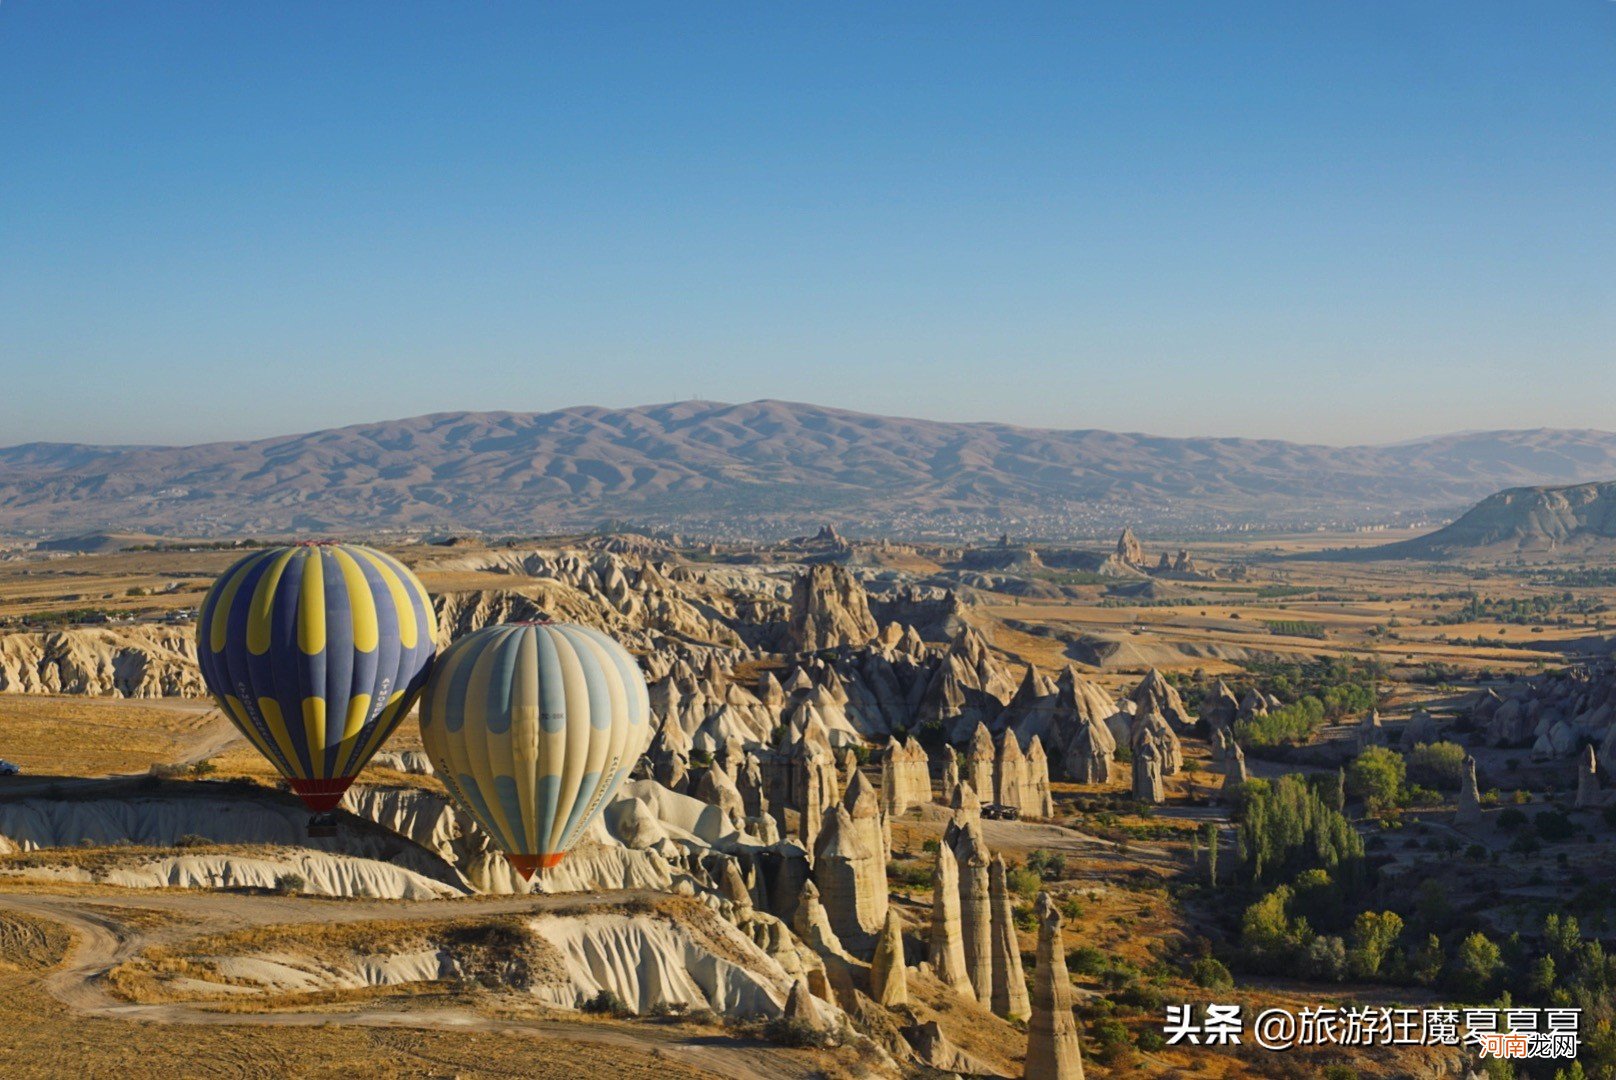 土耳其坐热气球的地方在哪里 土耳其热气球在哪个城市